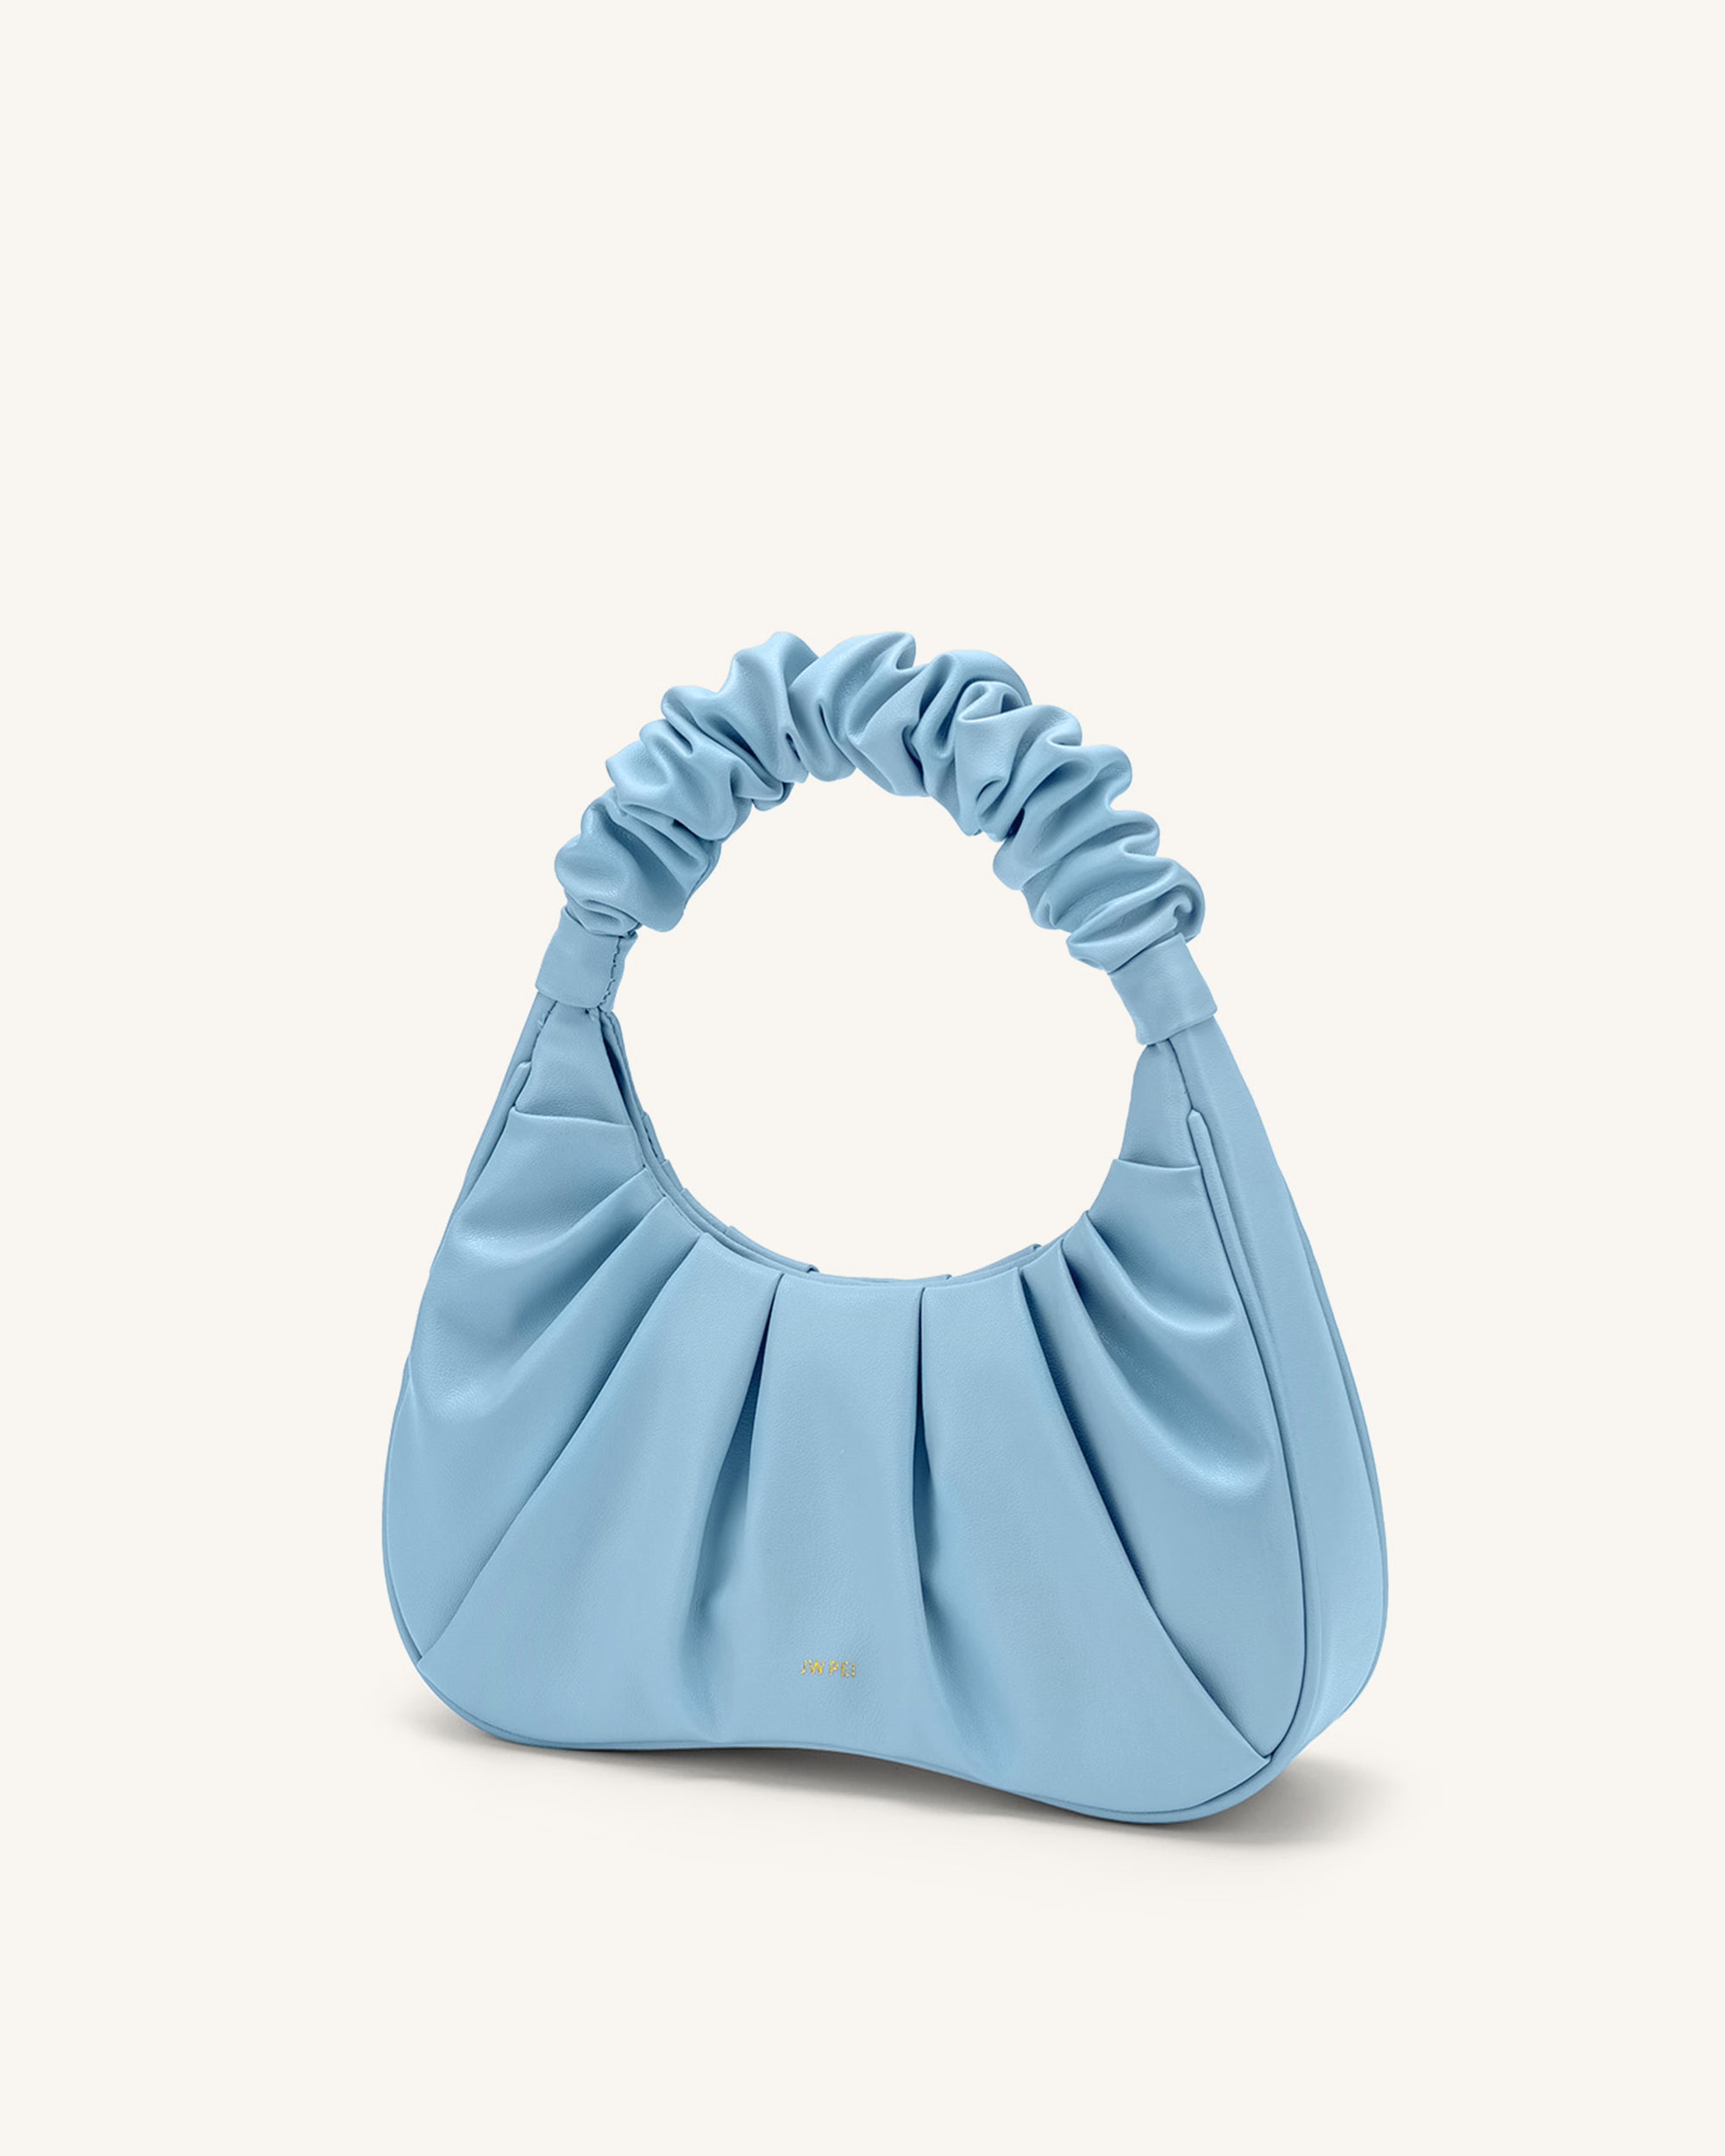 JW PEI Gabbi Bag in Bright Blue in 2023